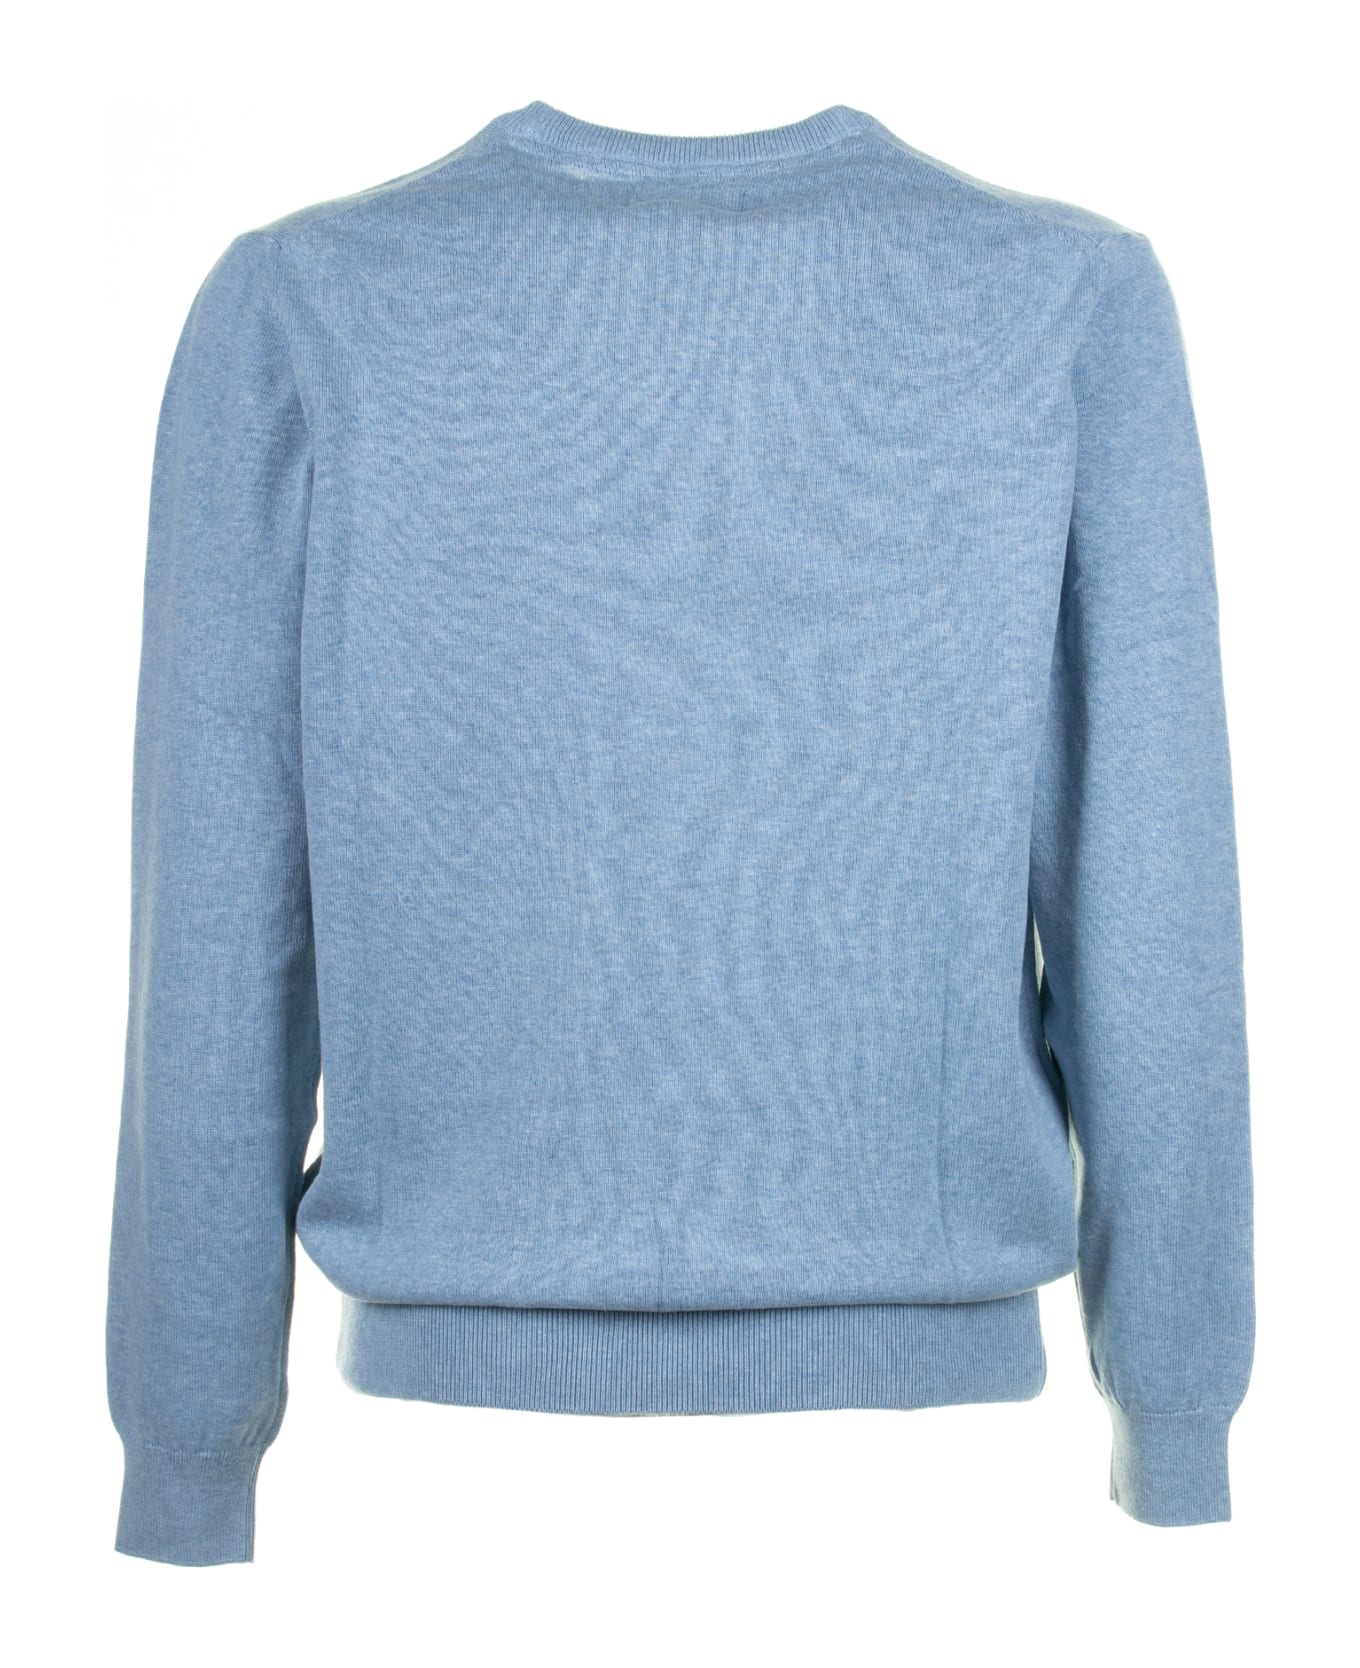 Barbour Light Blue Crew Neck Sweater - DK CHAMBRAY ニットウェア